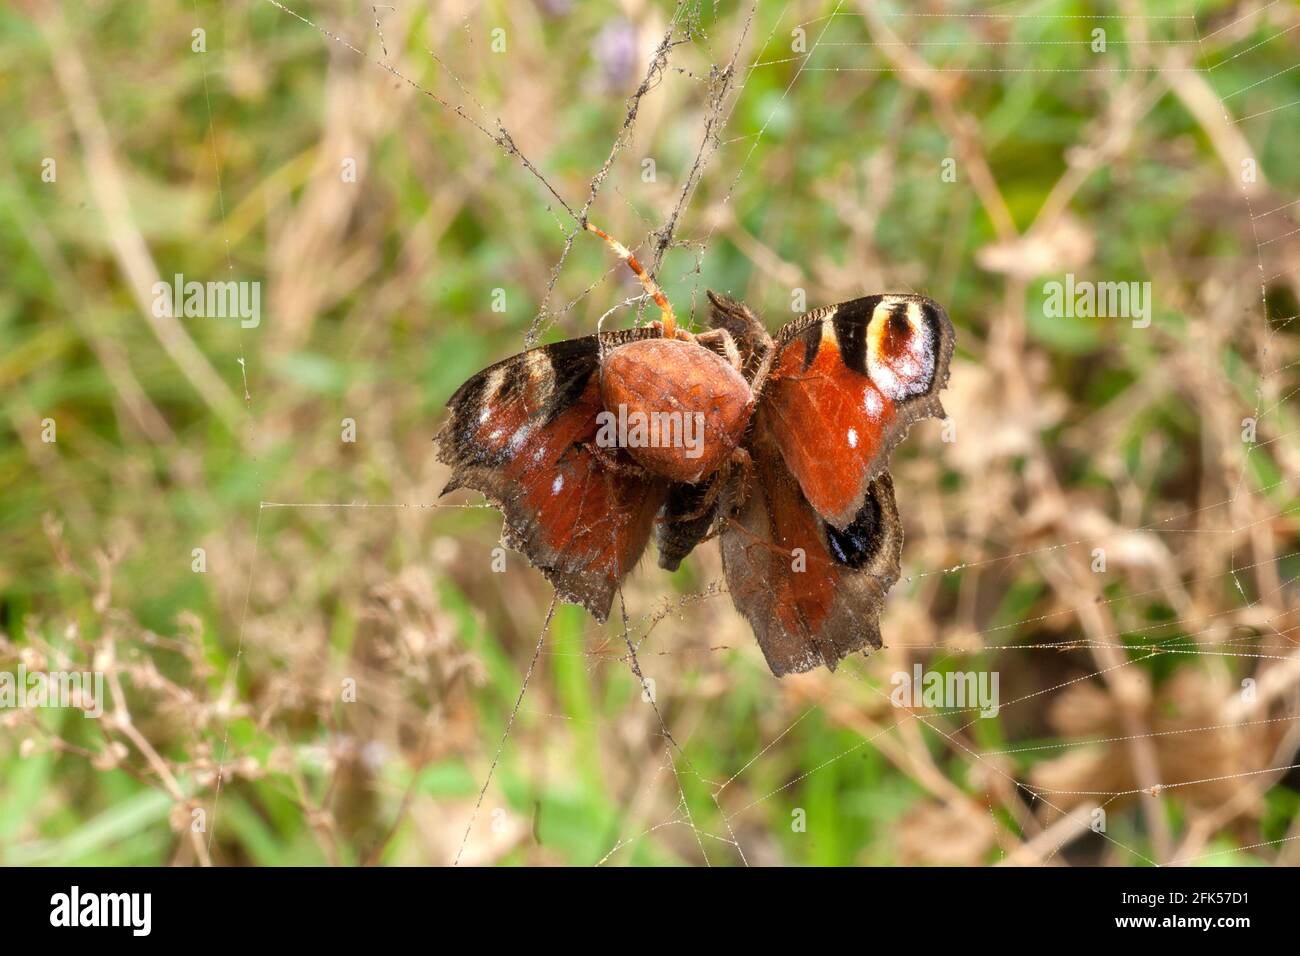 Der Schmetterling - Tampfauenauge - Aglais io Eine Spinne fängt Einen Schmetterling a ihrem Netz Foto Stock